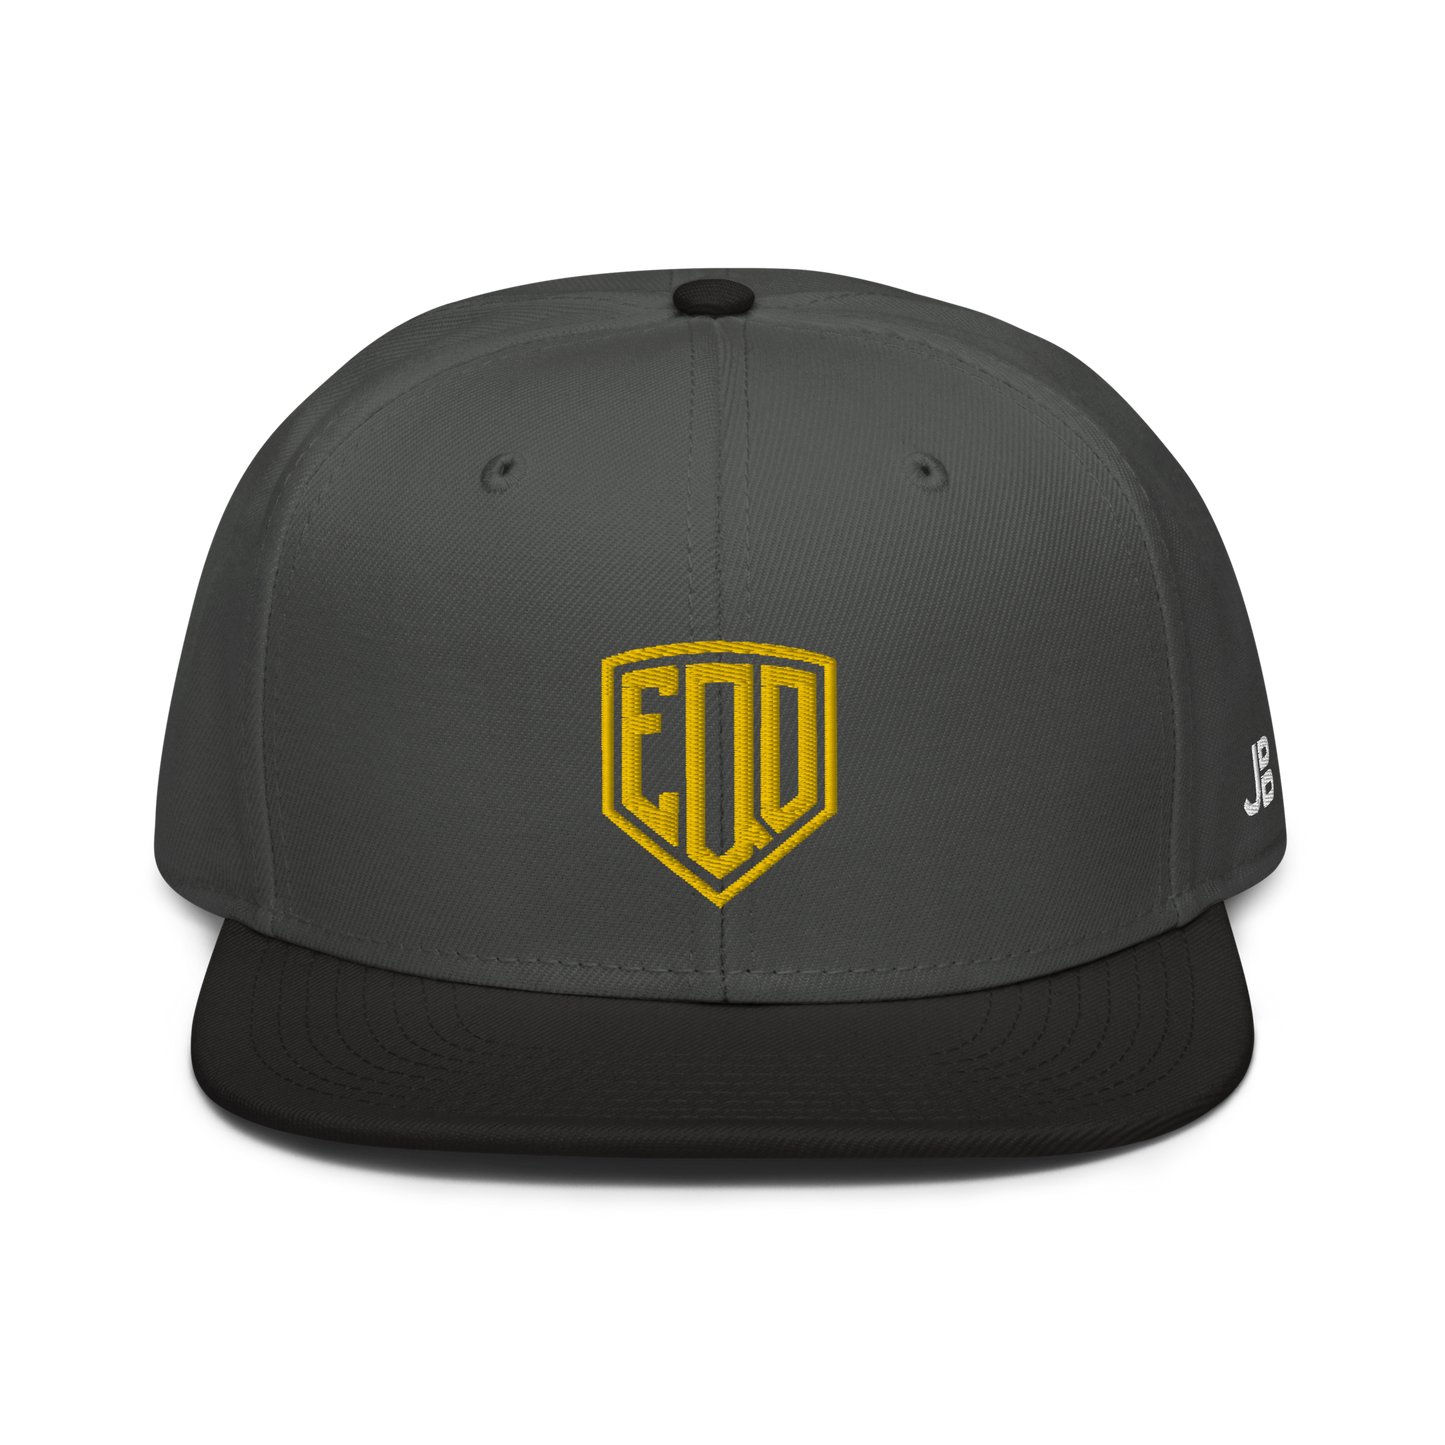 EQD - Snapback Cap